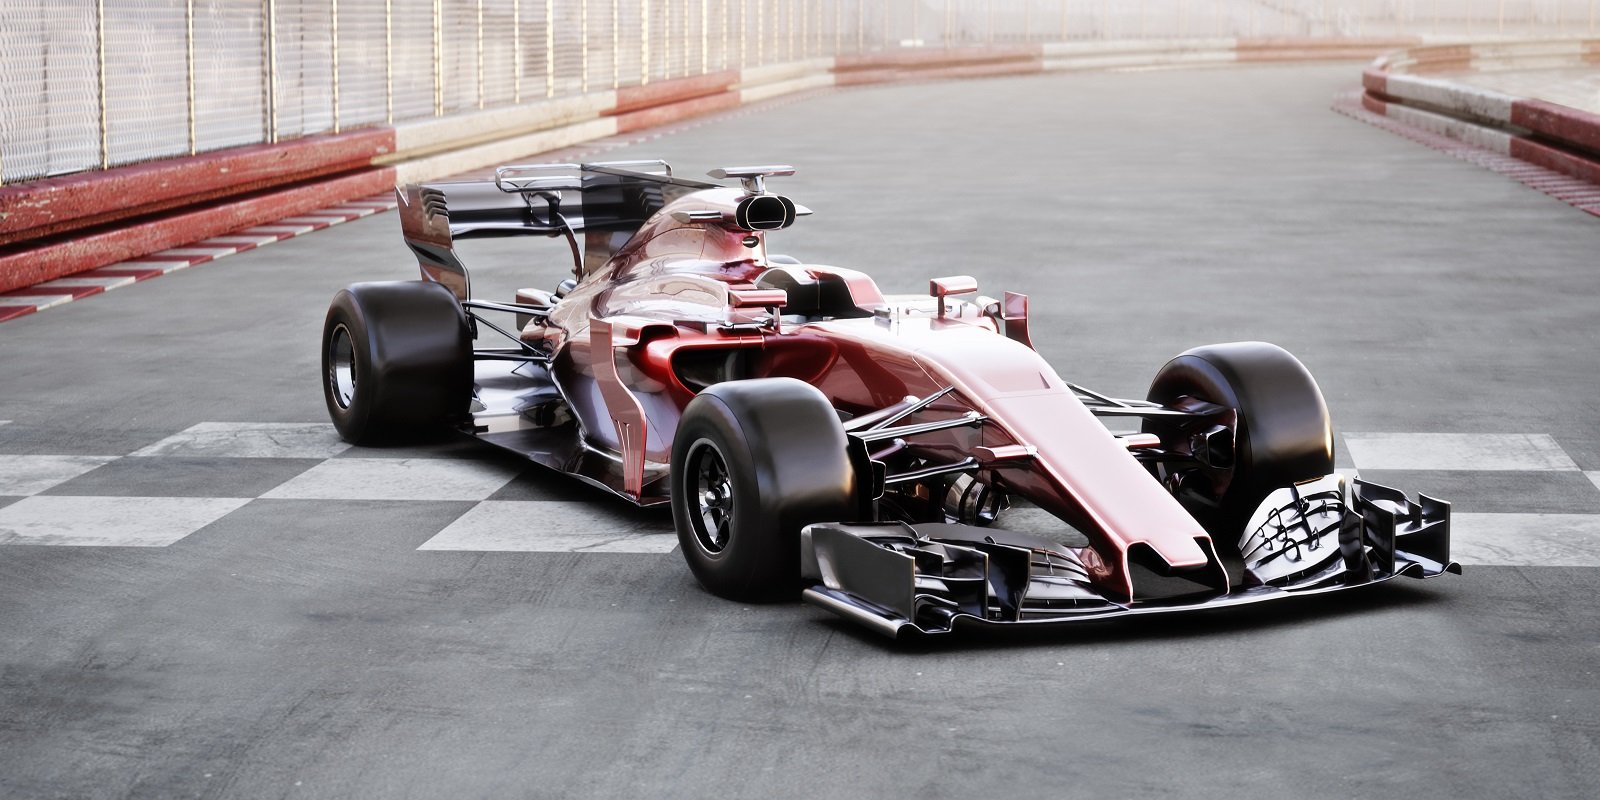 Das pistas à garagem: tecnologias automotivas com origem na Fórmula 1